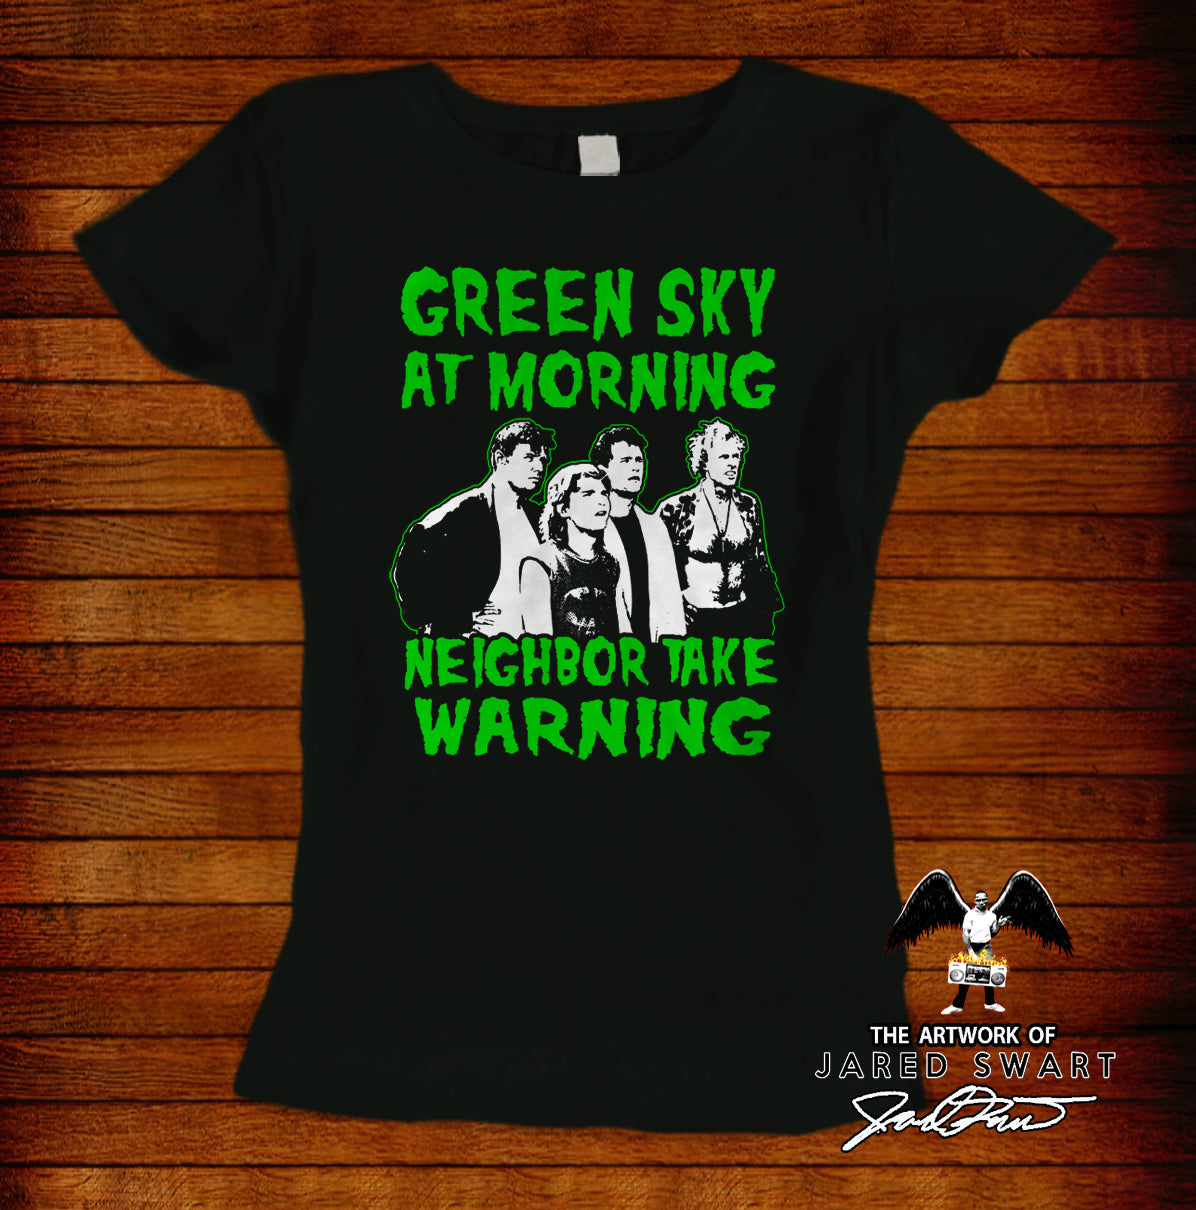 Burbs T-Shirt Green Sky